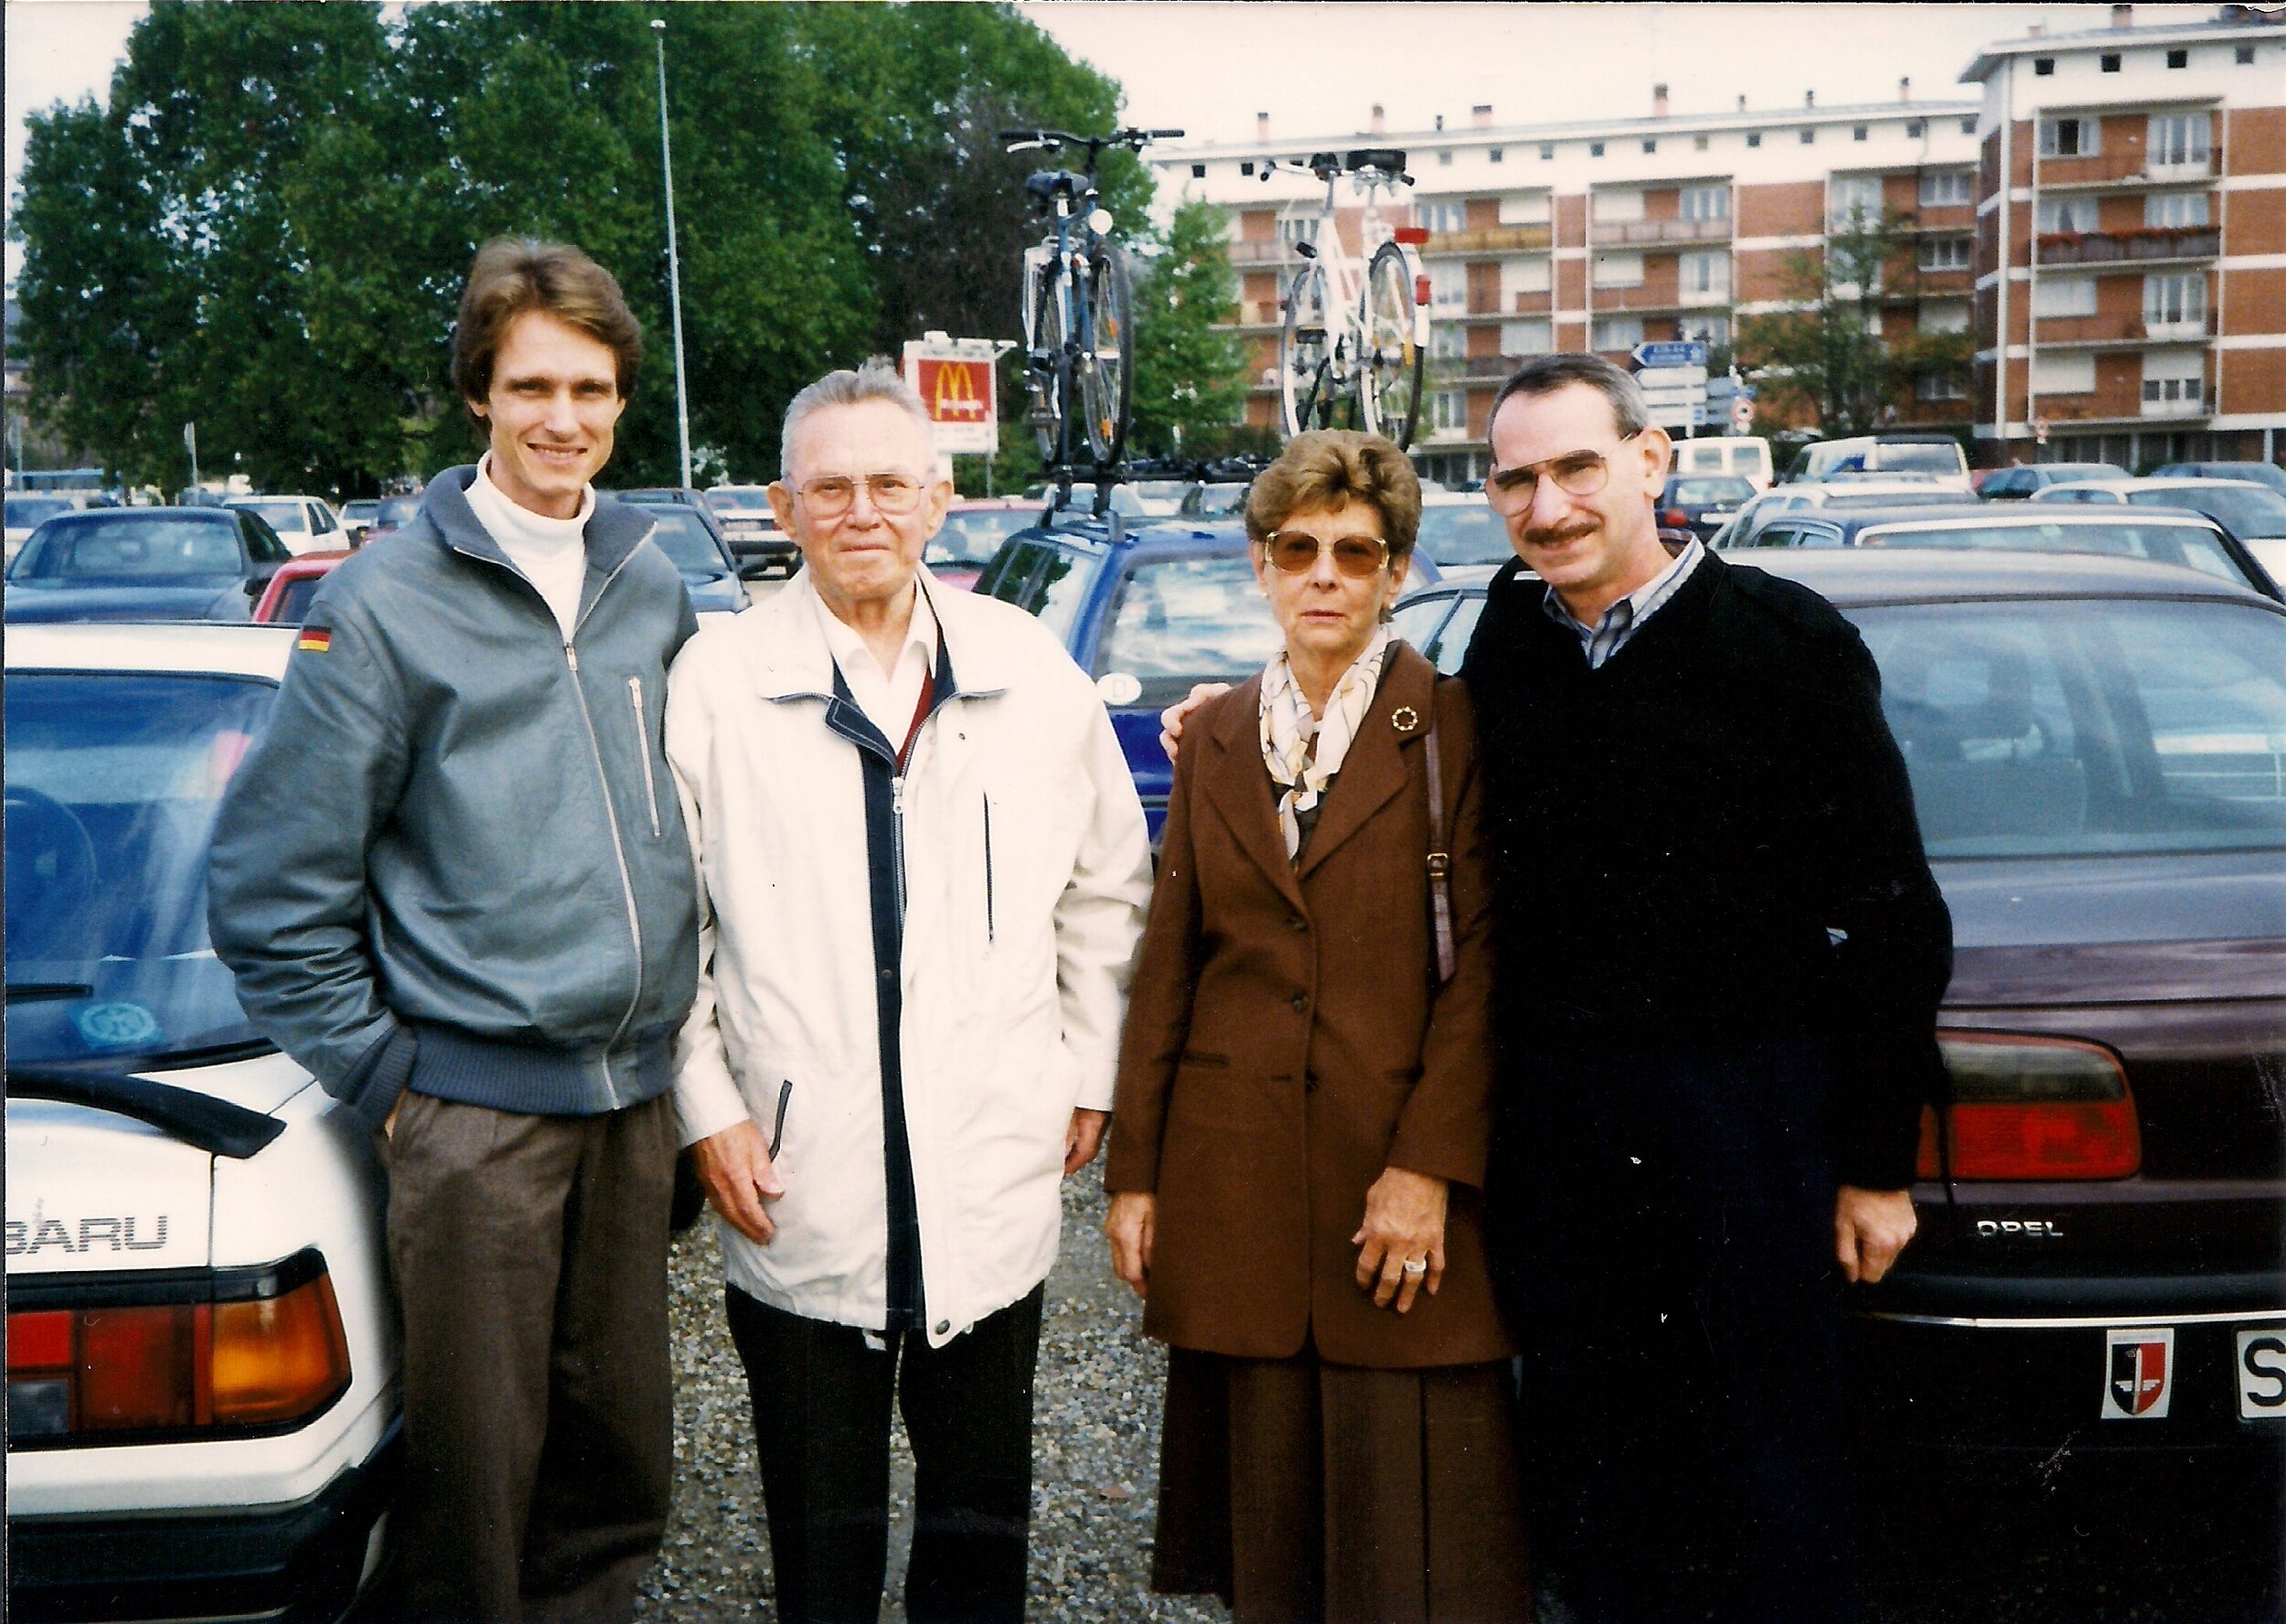 Colin, Walter Krupinski, Frau Krupinski, Jon Guttman 1999